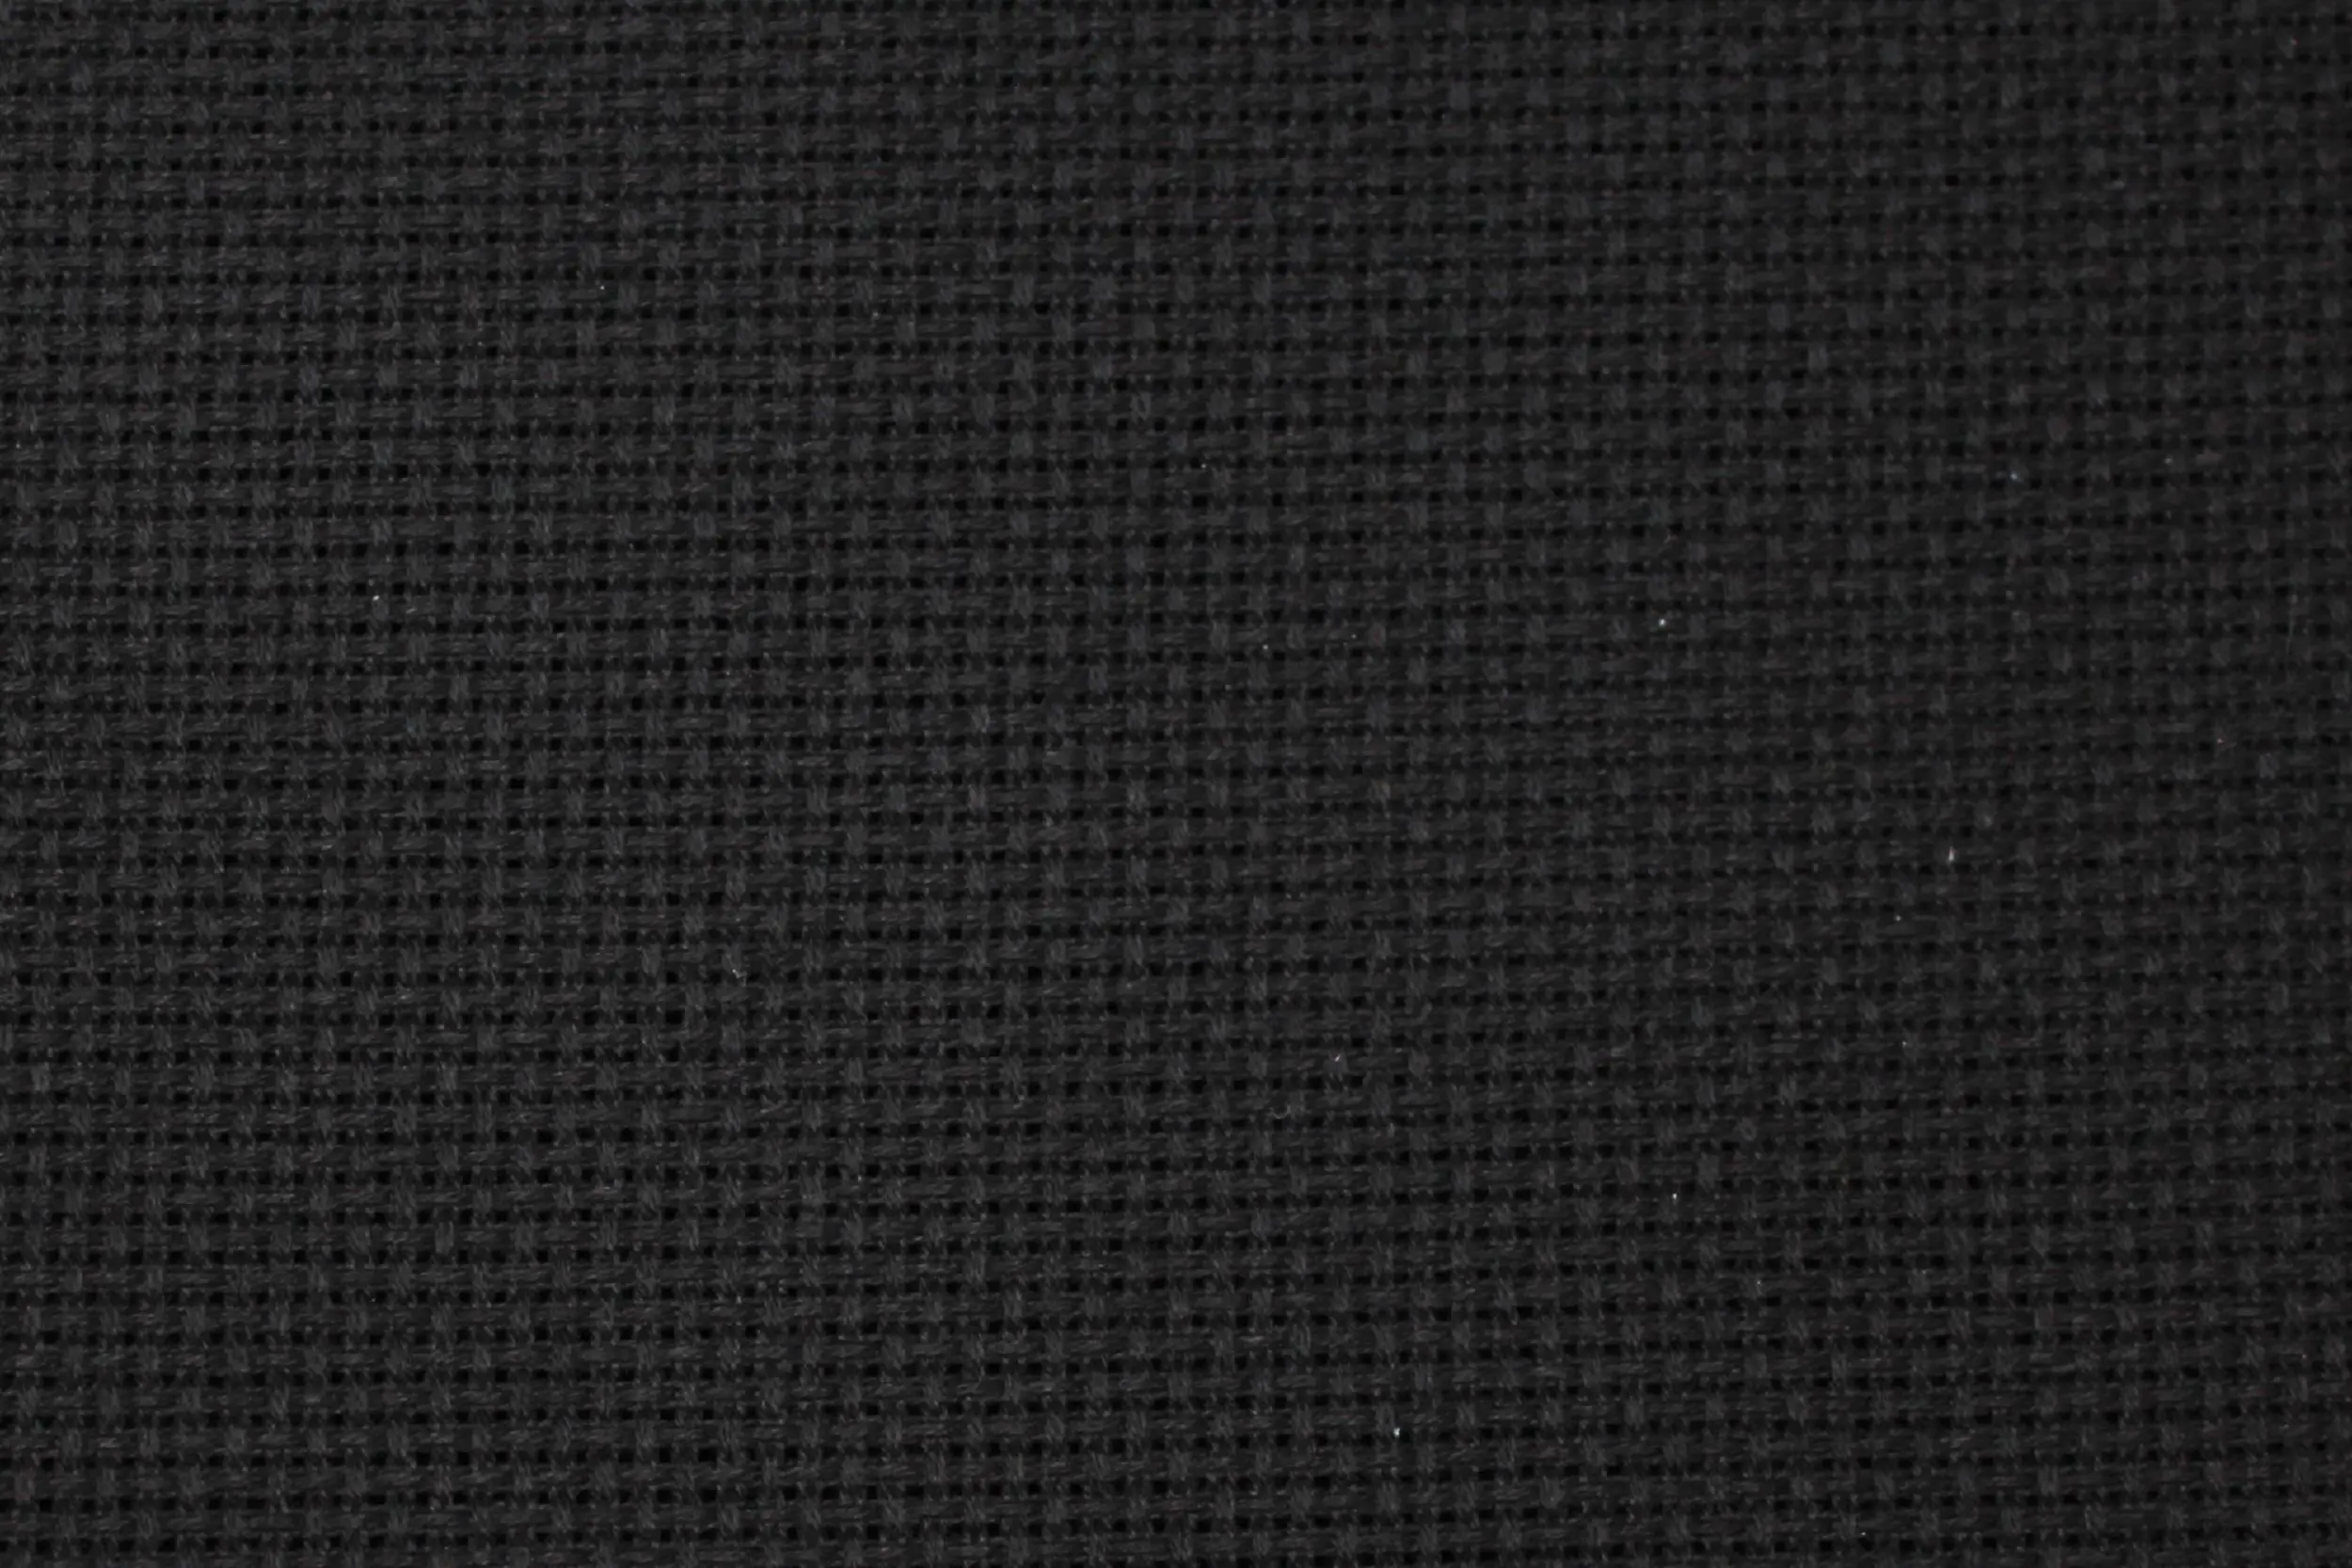 Канва для вишивання подвійного кручення Арт.56 К5,5 чорна, 100% бавовна, 50х50см